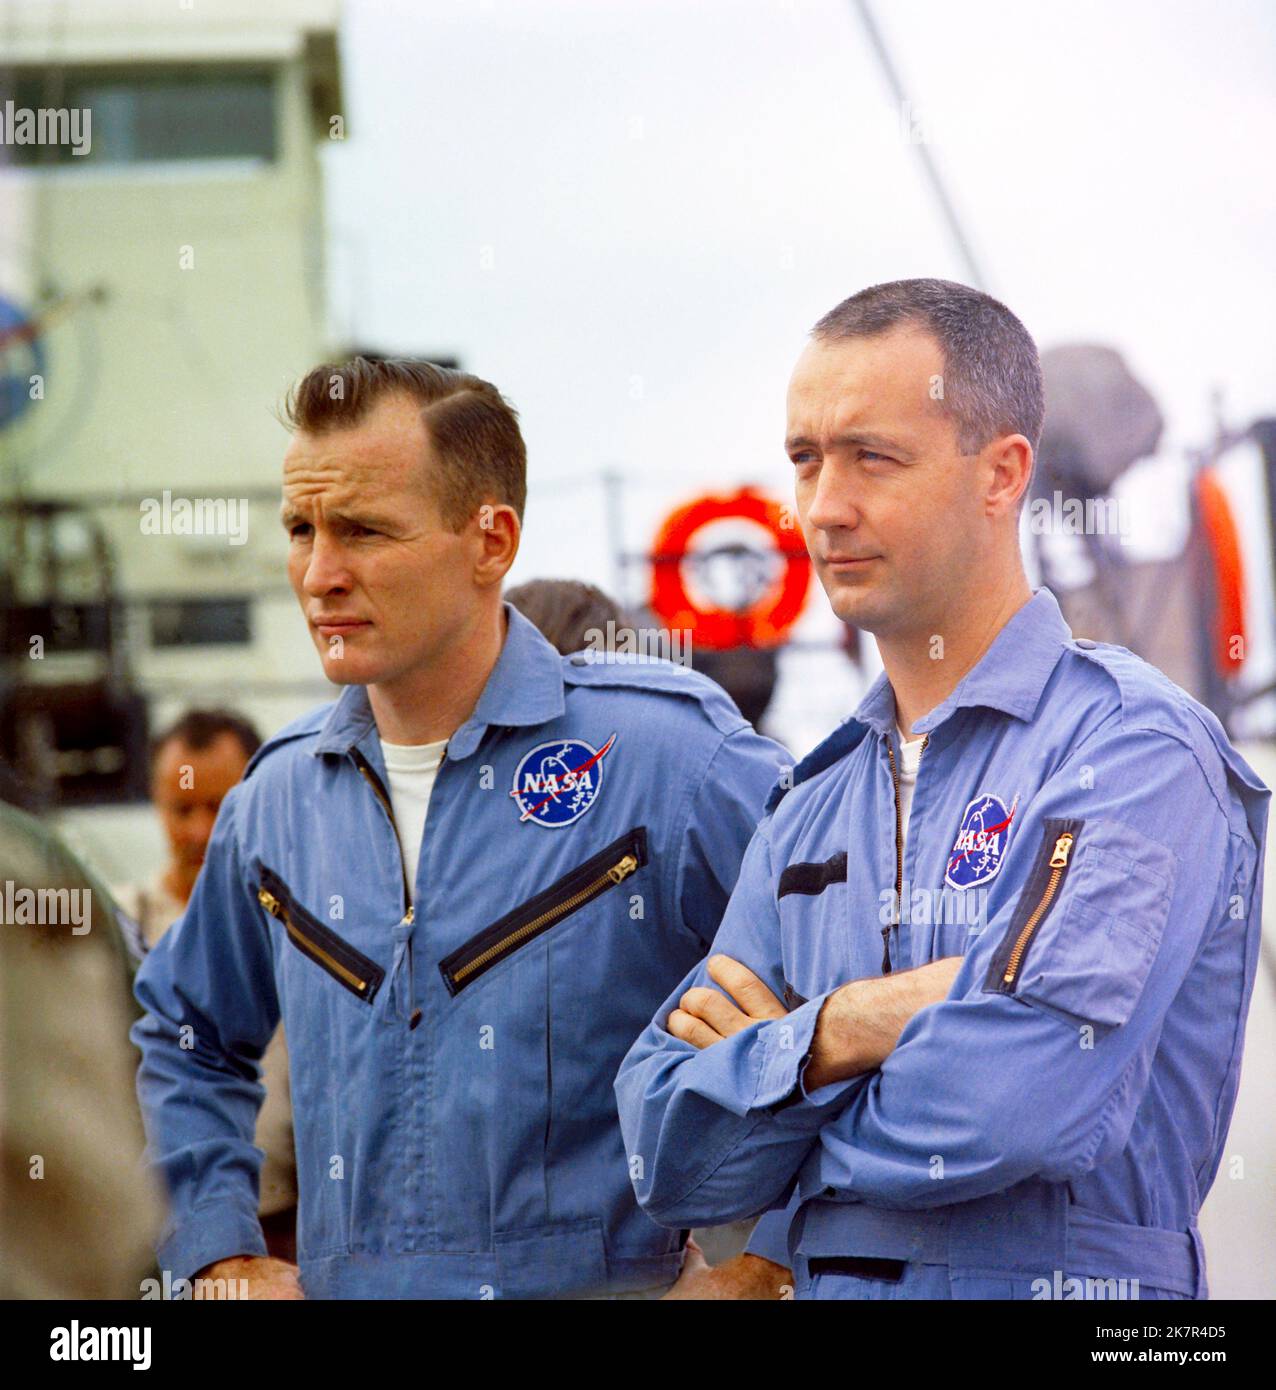 Houston, États-Unis. 18th octobre 2022. L'équipage principal Gemini-Titan 4 de la NASA, les astronautes Edward H. White II (à gauche), pilote, et James A. McDivitt, pilote de commandement, à bord du Retriever de la NASA pendant l'entraînement dans le golfe du Mexique, à 5 mai 1965, au large de la côte du Texas. McDivitt a commandé la première mission de sortie de l'espace et a pris part au premier vol orbital avec équipage d'un module lunaire, durant l'Apollon 9, est décédé 15 octobre 2022 à l'âge de 93 ans. Credit: NASA/NASA/Alamy Live News Banque D'Images